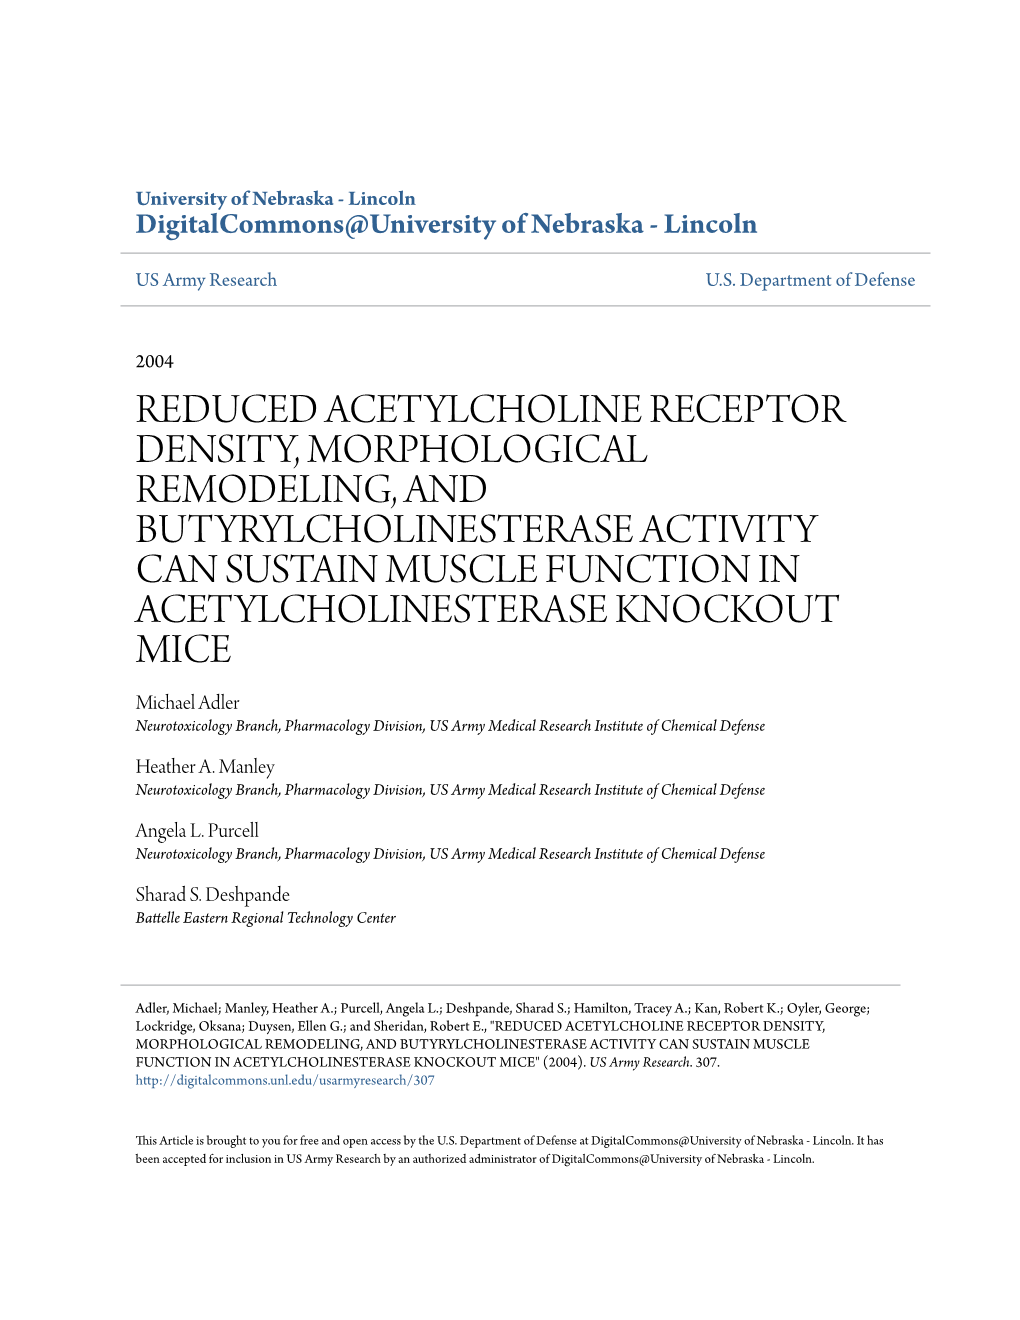 Reduced Acetylcholine Receptor Density